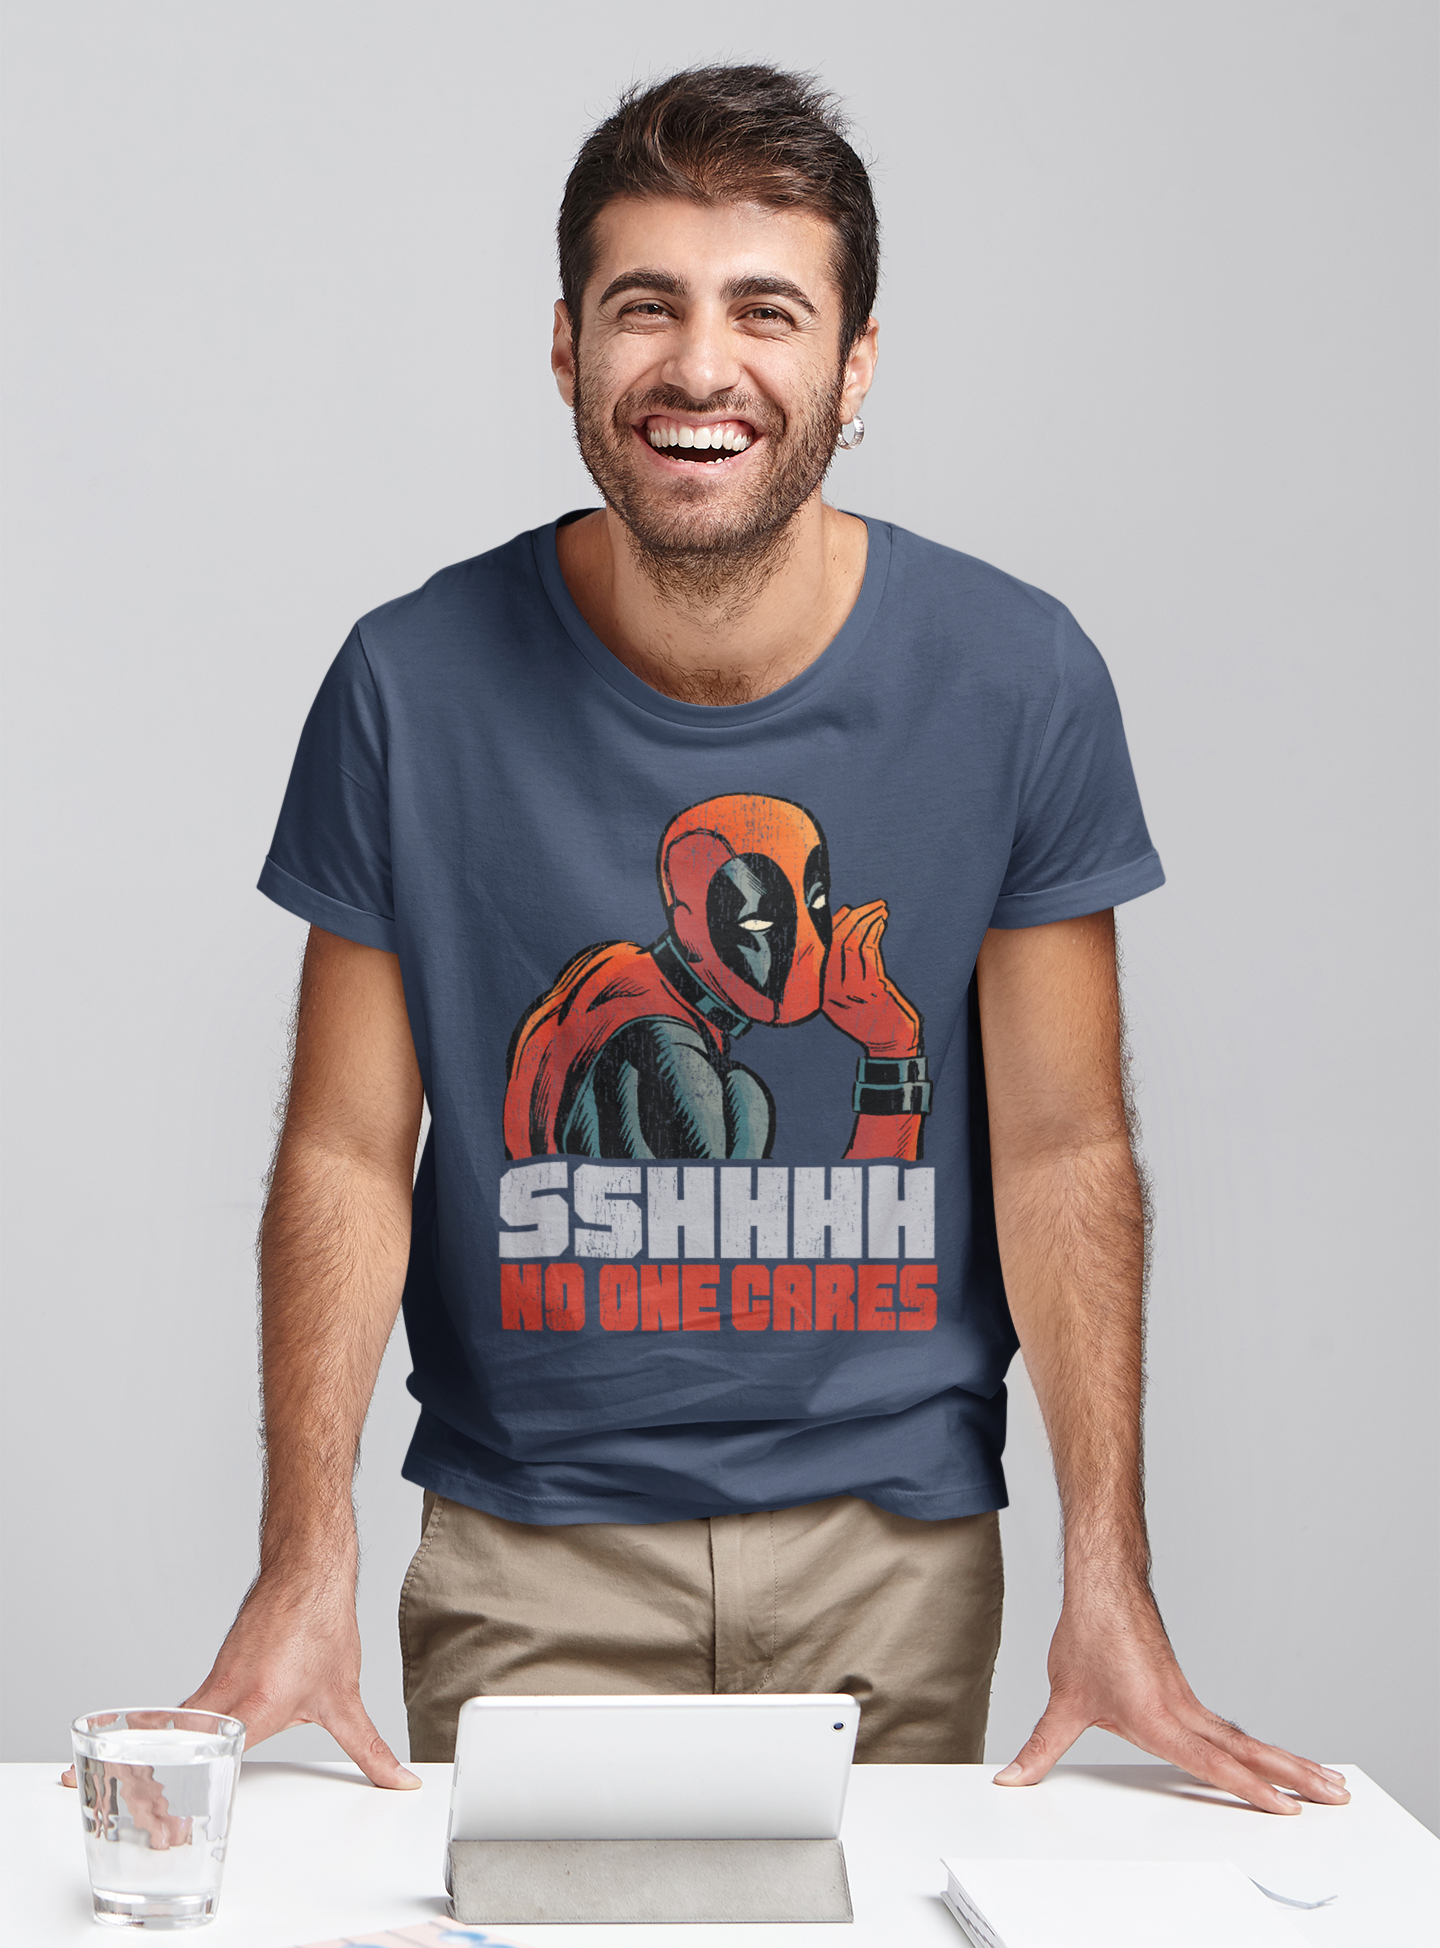 Deadpool T Shirt, Superhero Deadpool T Shirt, SSHHHH No One Cares Whisper Tshirt